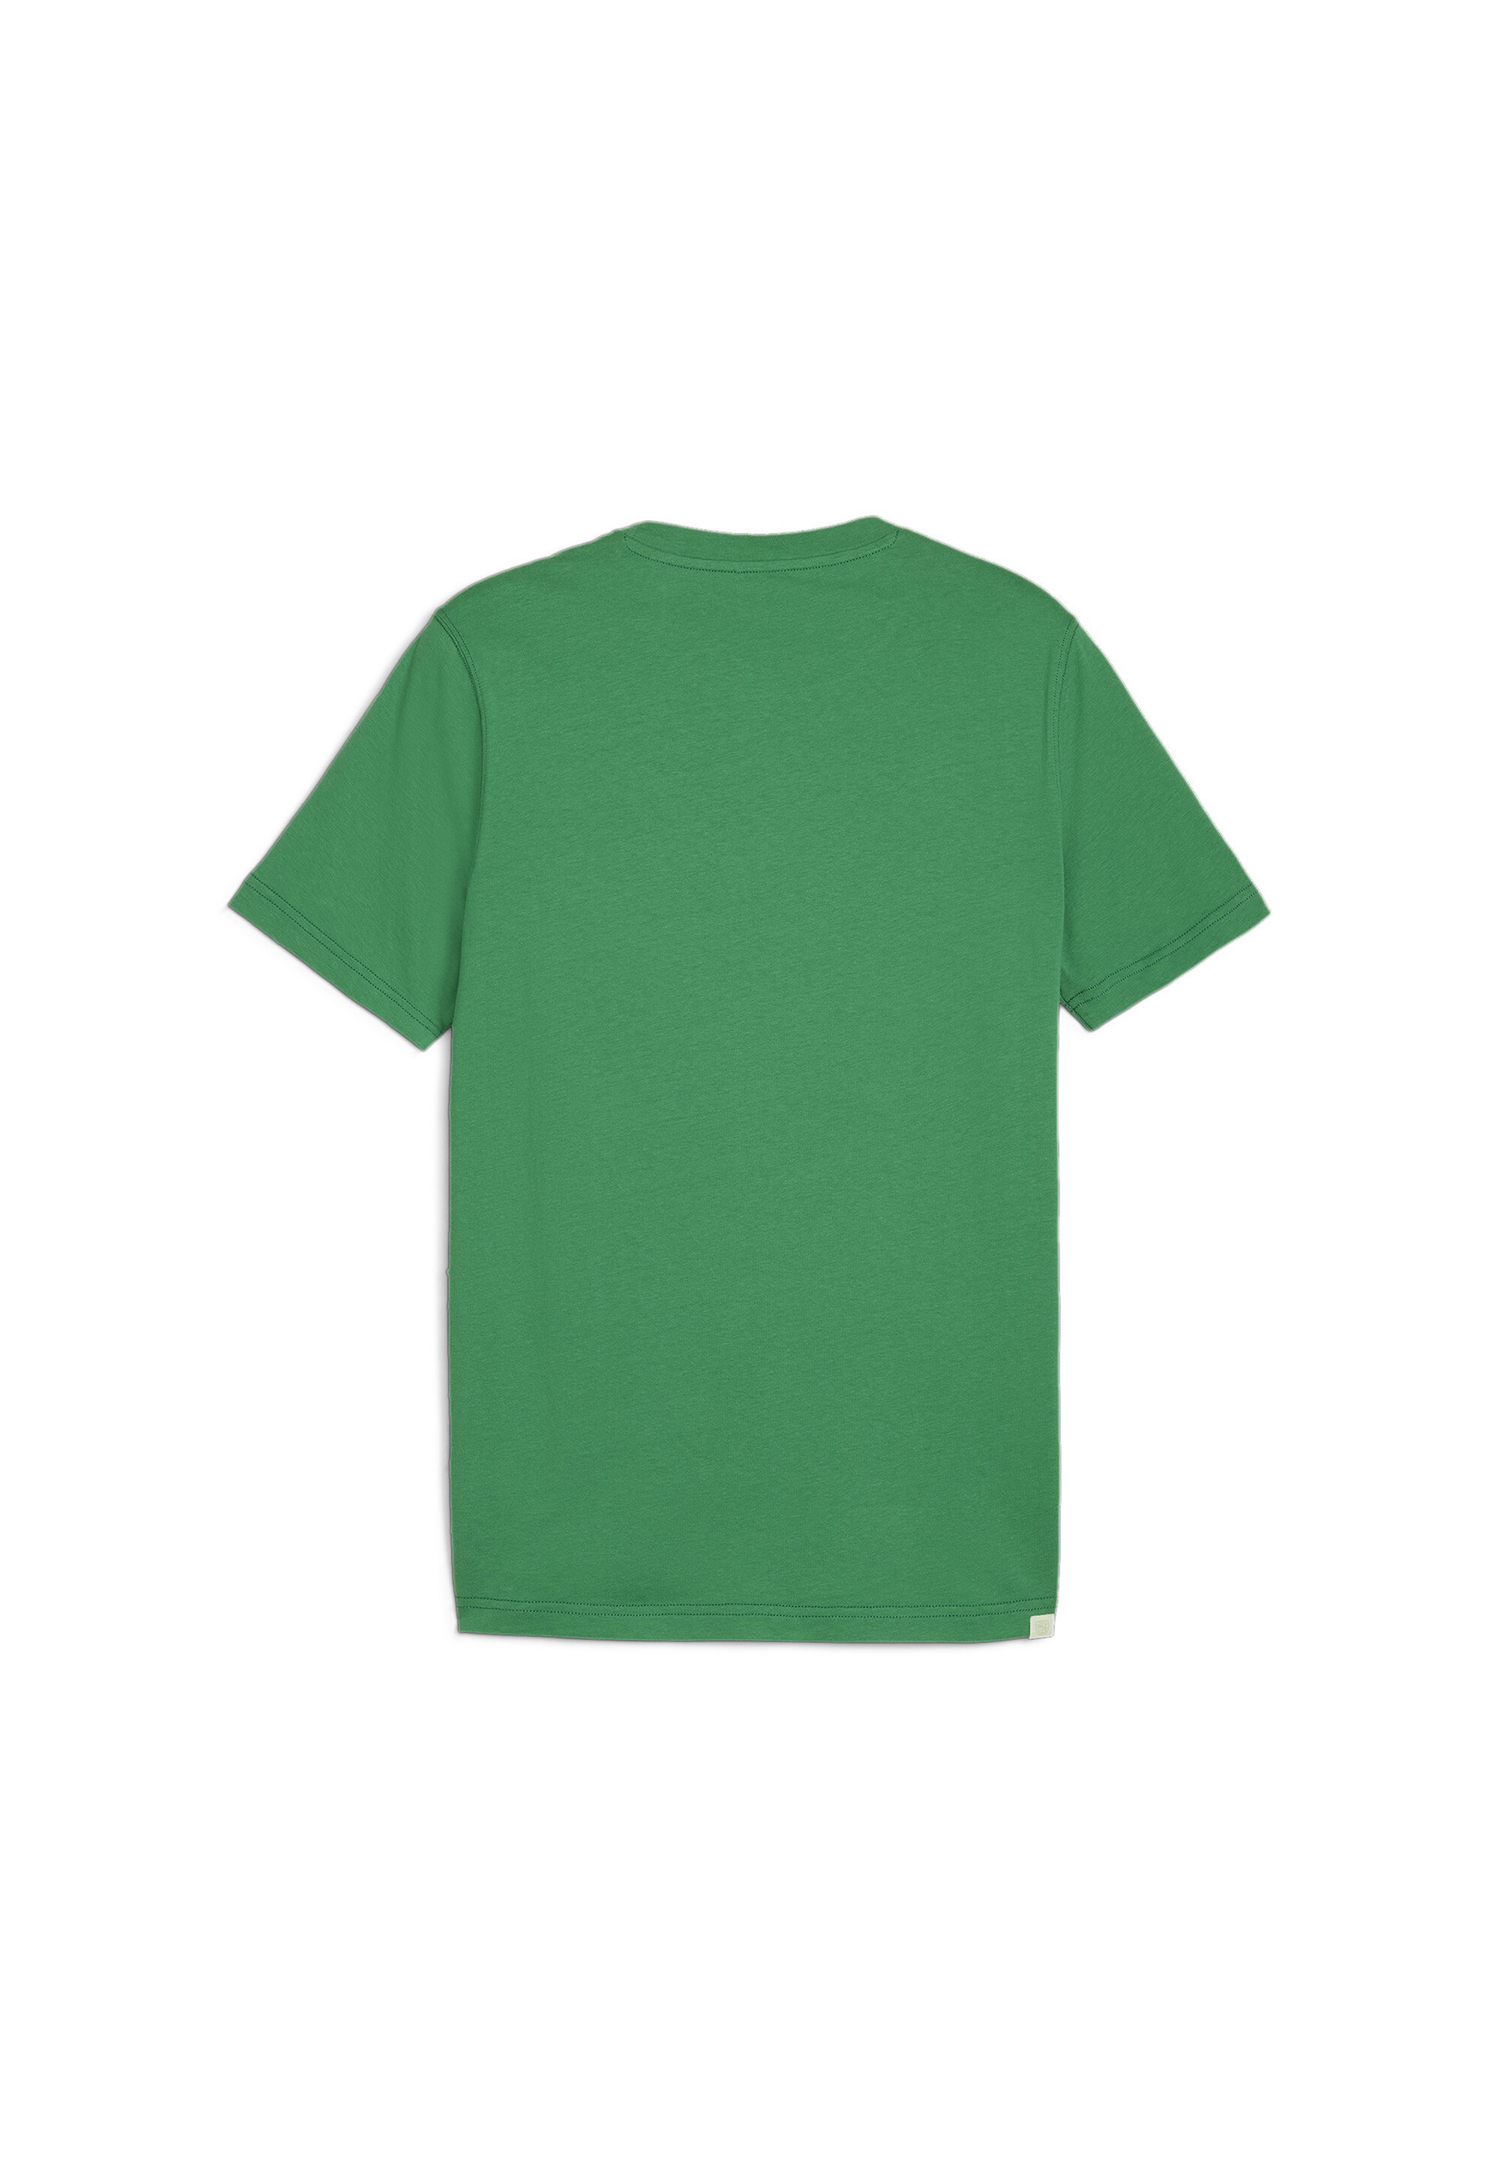 PUMA Better Sportswear Tee Herren T-Shirt 679001 86 grün